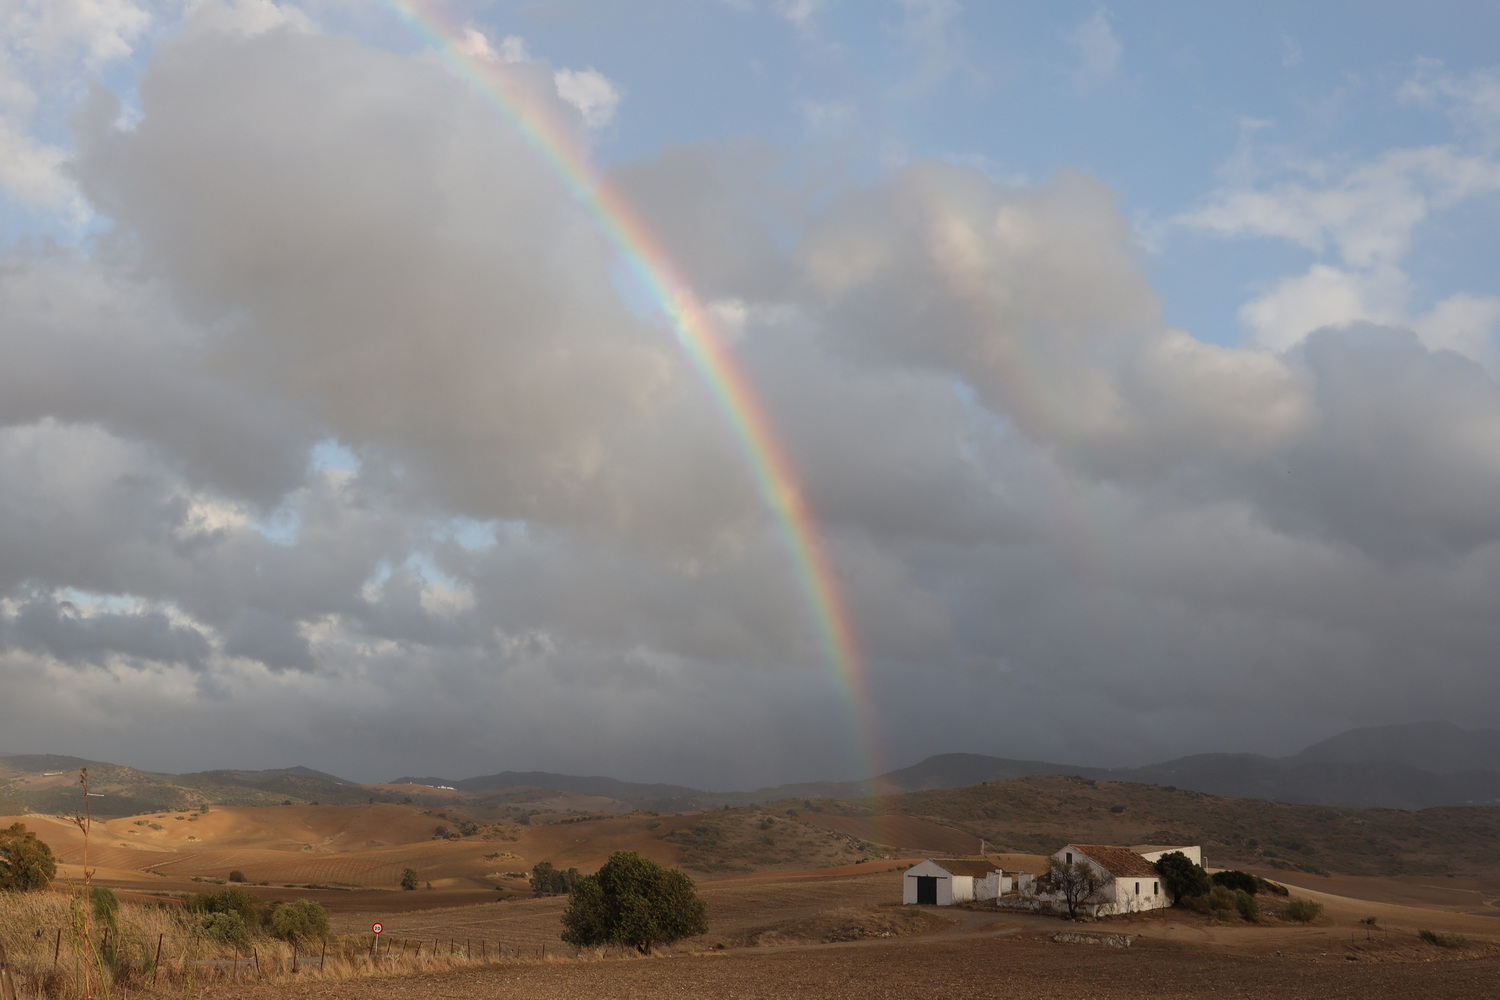 Hacienda mit Regenbogen